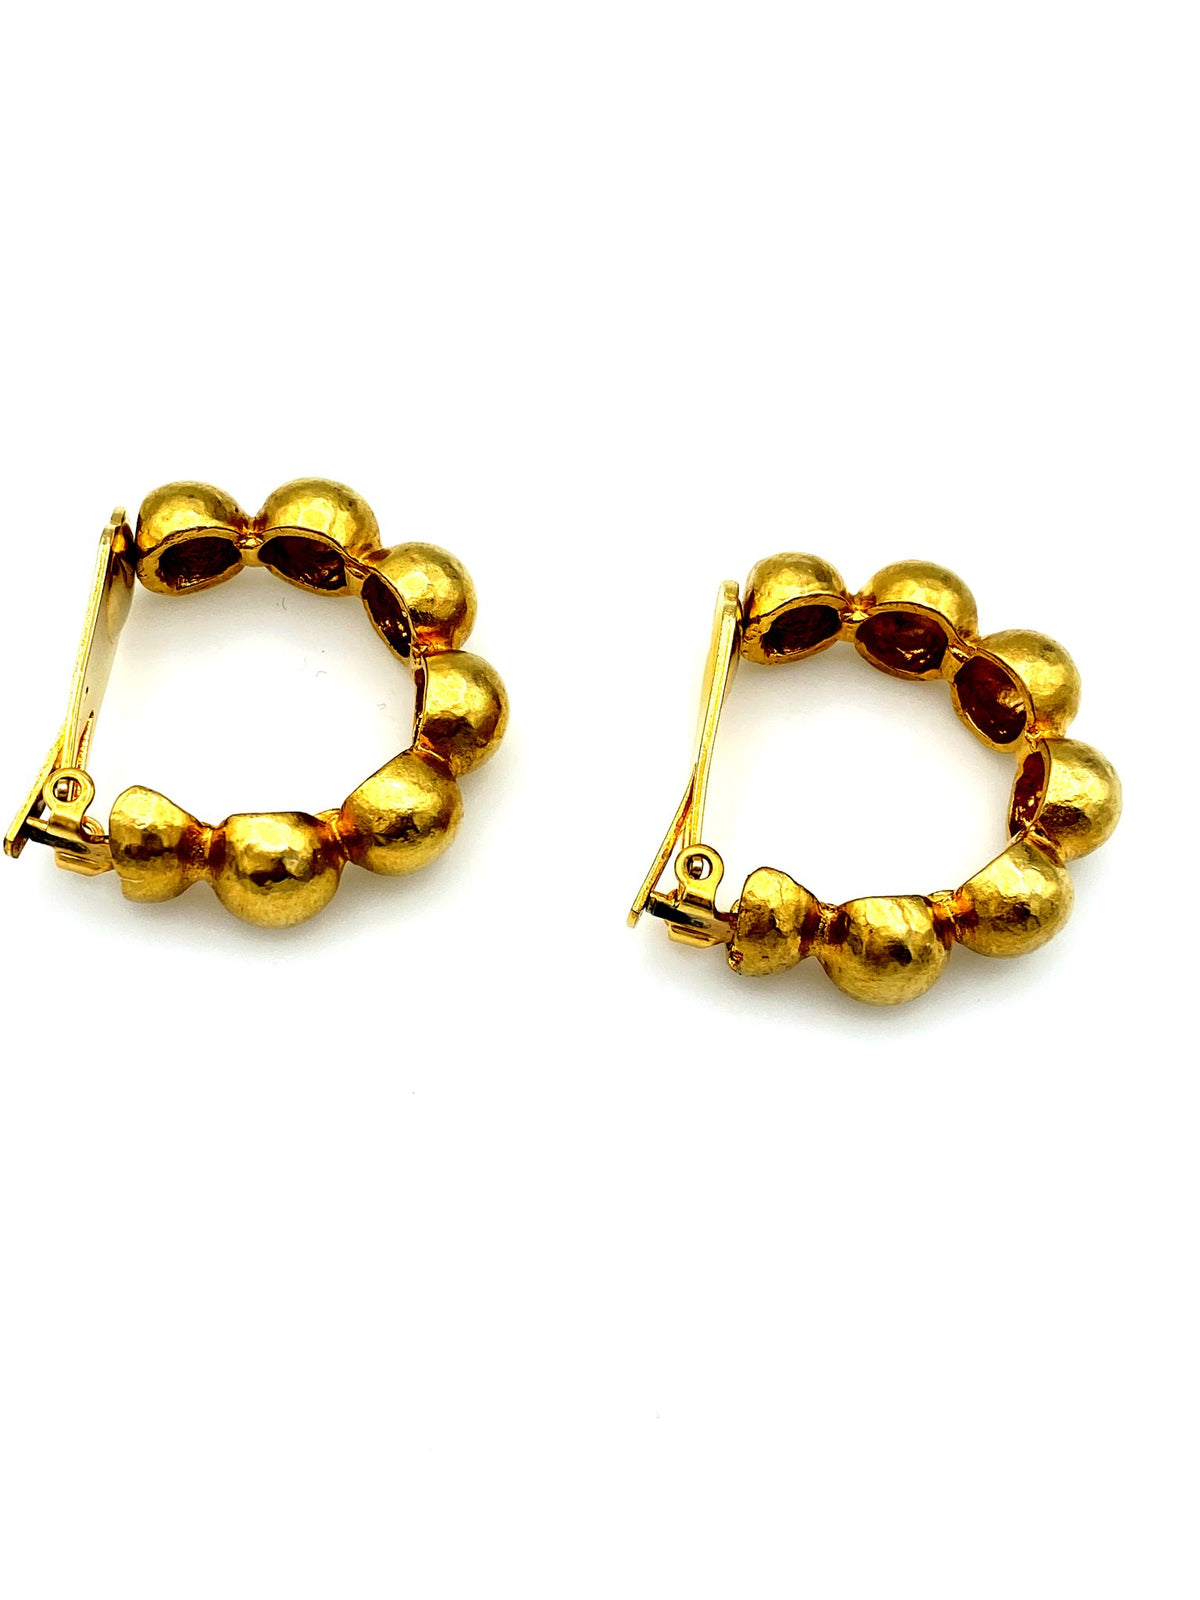 Les Bernard Gold Brutalist Hoop Clip-On Earrings - 24 Wishes Vintage Jewelry